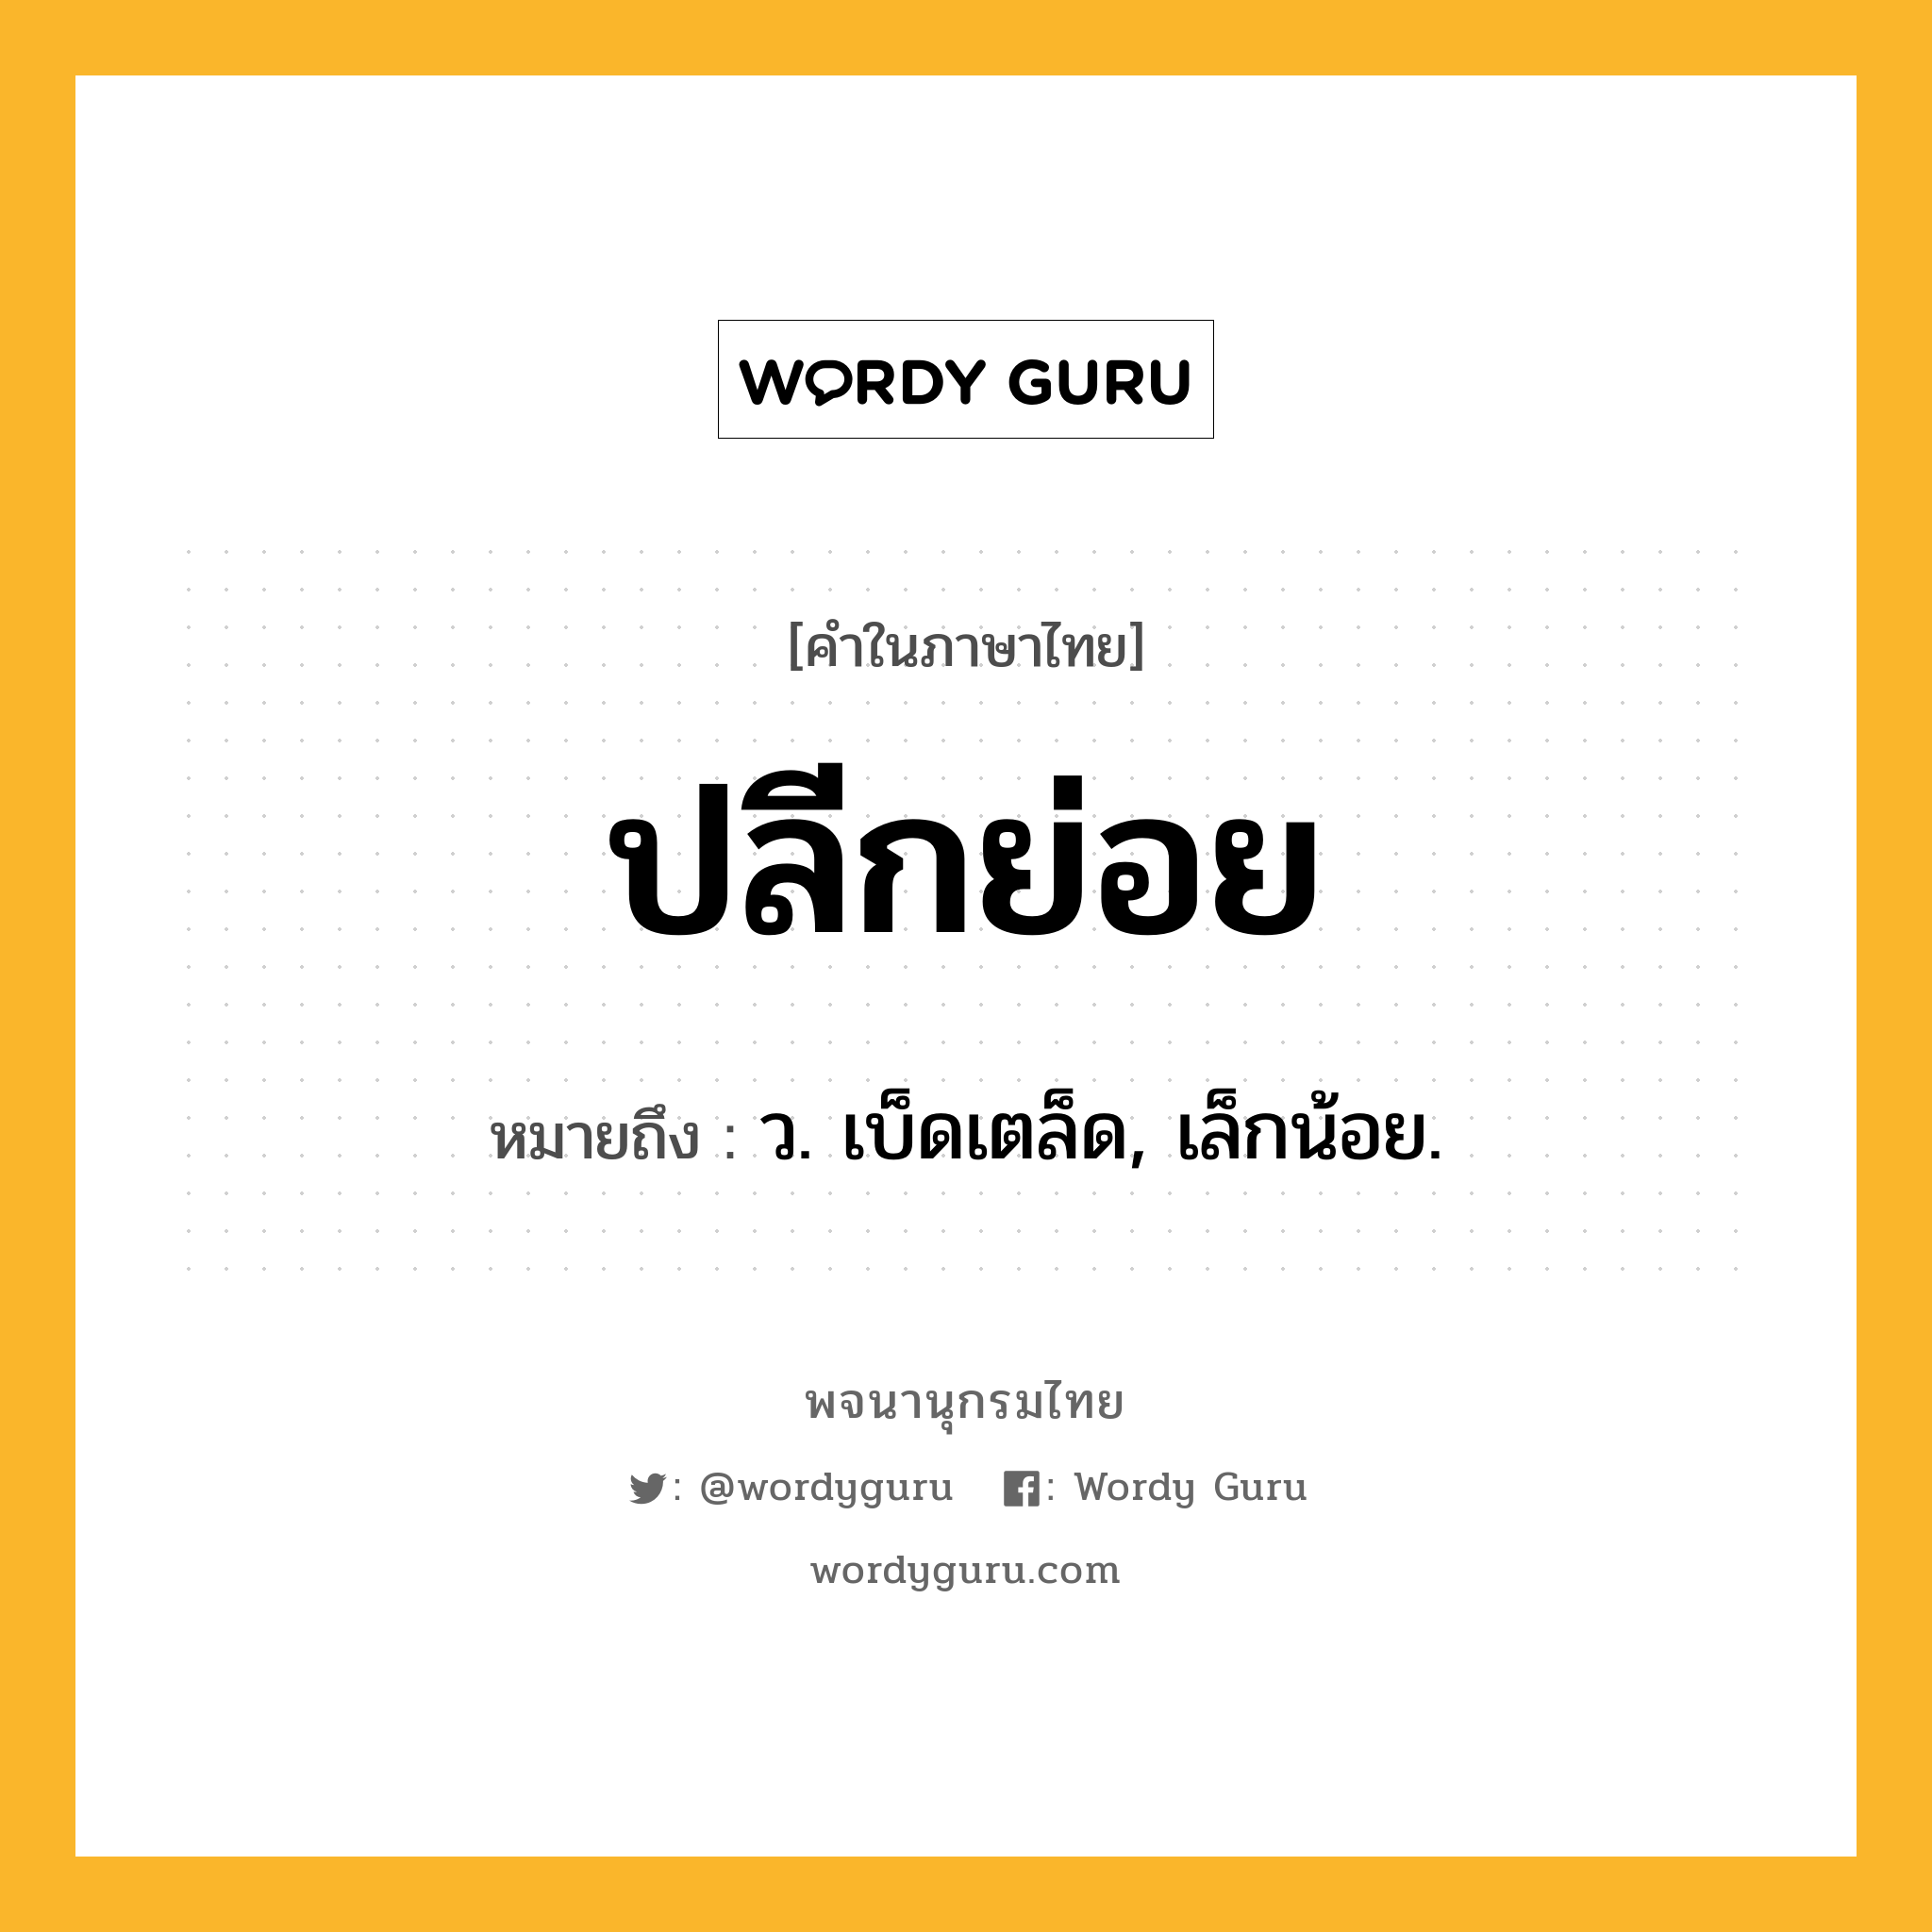 ปลีกย่อย ความหมาย หมายถึงอะไร?, คำในภาษาไทย ปลีกย่อย หมายถึง ว. เบ็ดเตล็ด, เล็กน้อย.